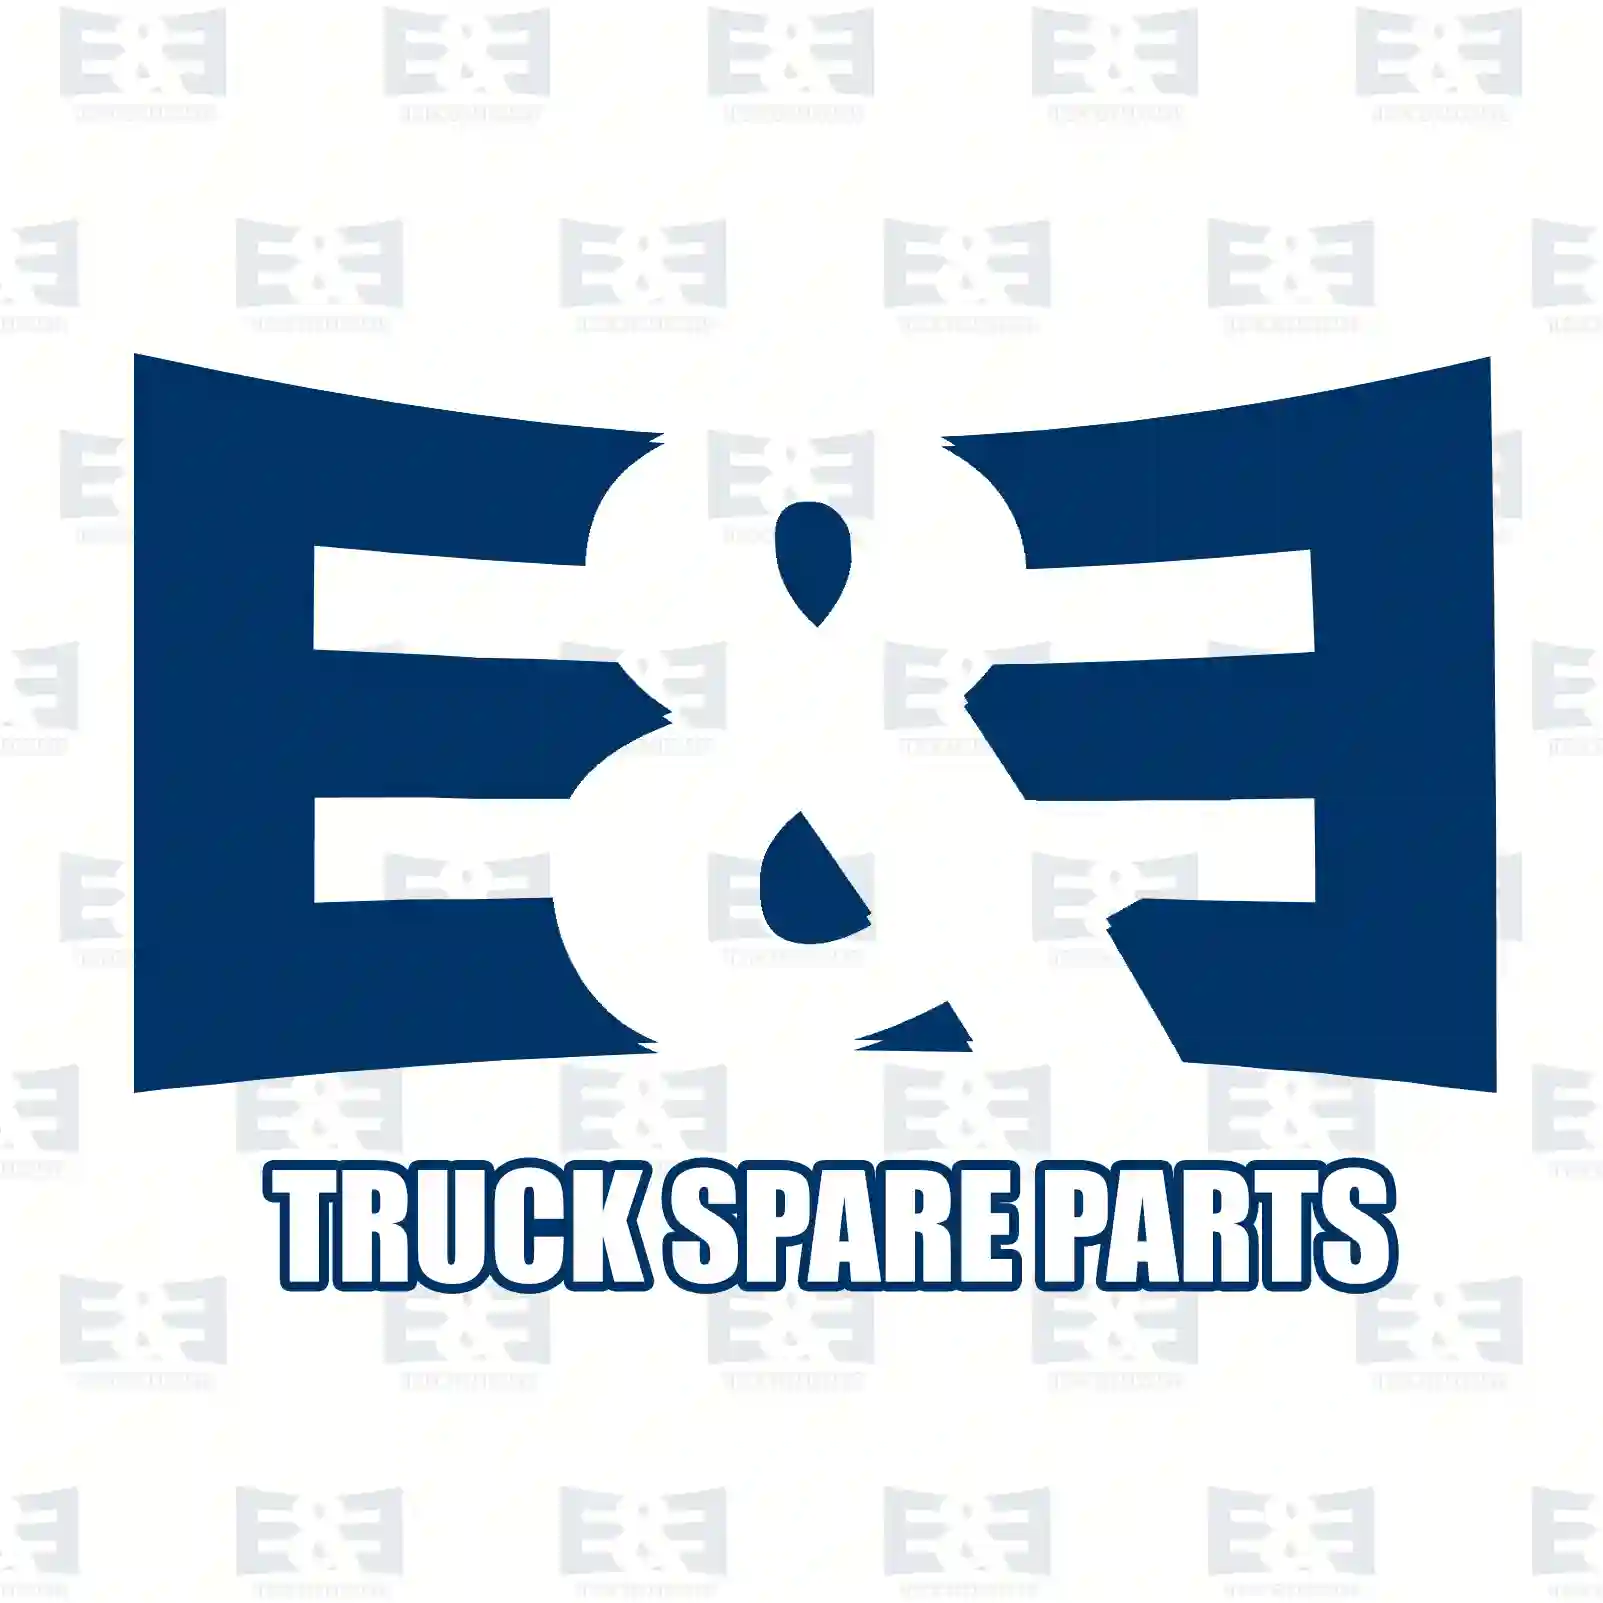 V-stay, 2E2282725, 04865483, 42575356, 4865483 ||  2E2282725 E&E Truck Spare Parts | Truck Spare Parts, Auotomotive Spare Parts V-stay, 2E2282725, 04865483, 42575356, 4865483 ||  2E2282725 E&E Truck Spare Parts | Truck Spare Parts, Auotomotive Spare Parts